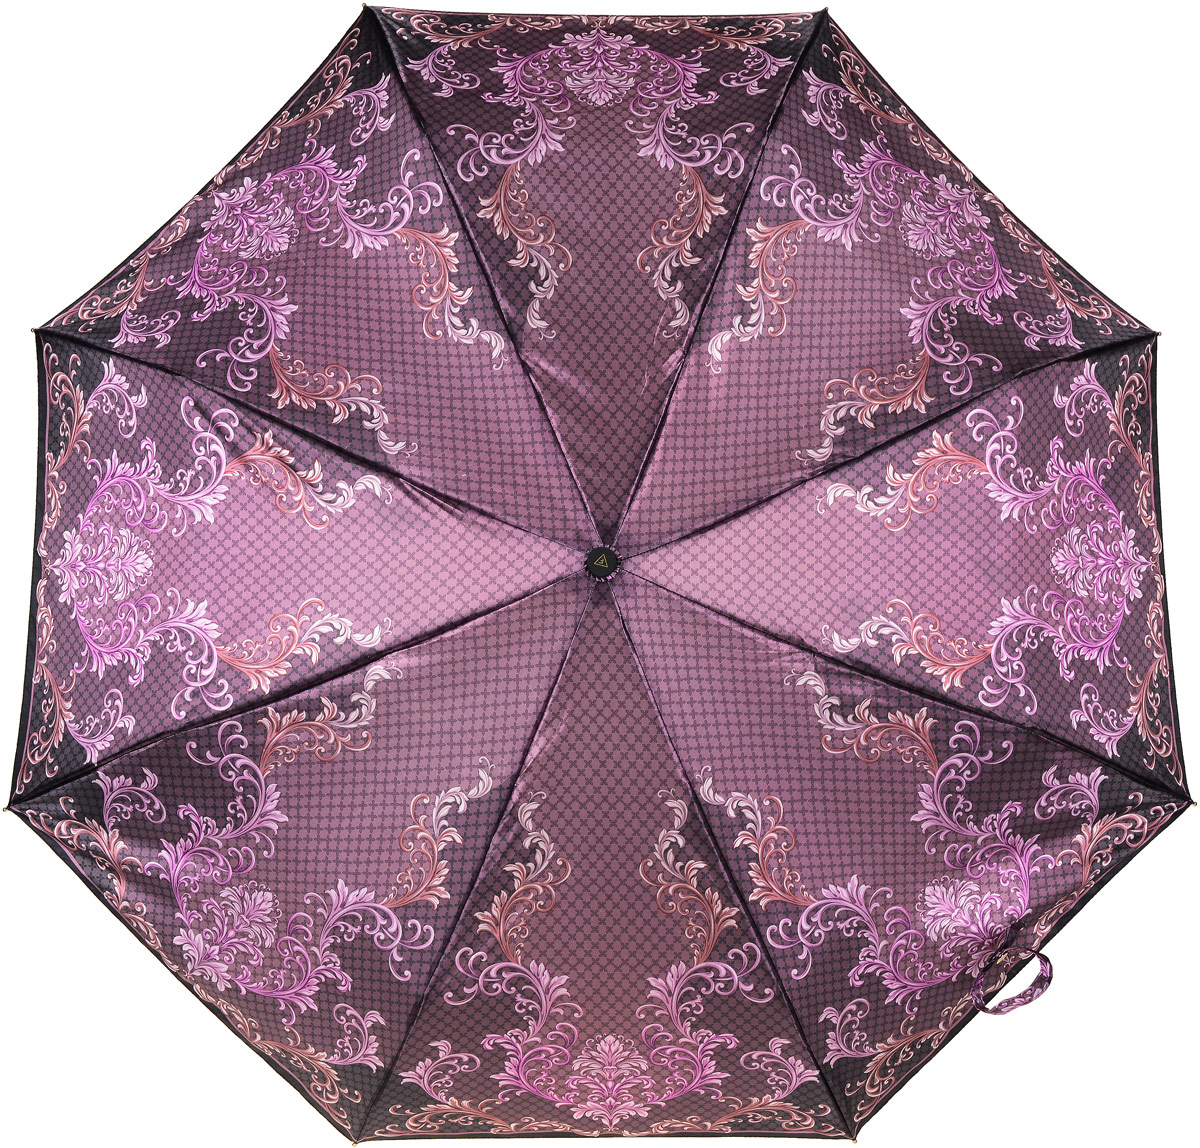 Зонт женский Fabretti, автомат, 3 сложения, цвет: баклажановый, мультиколор. S-17101-2